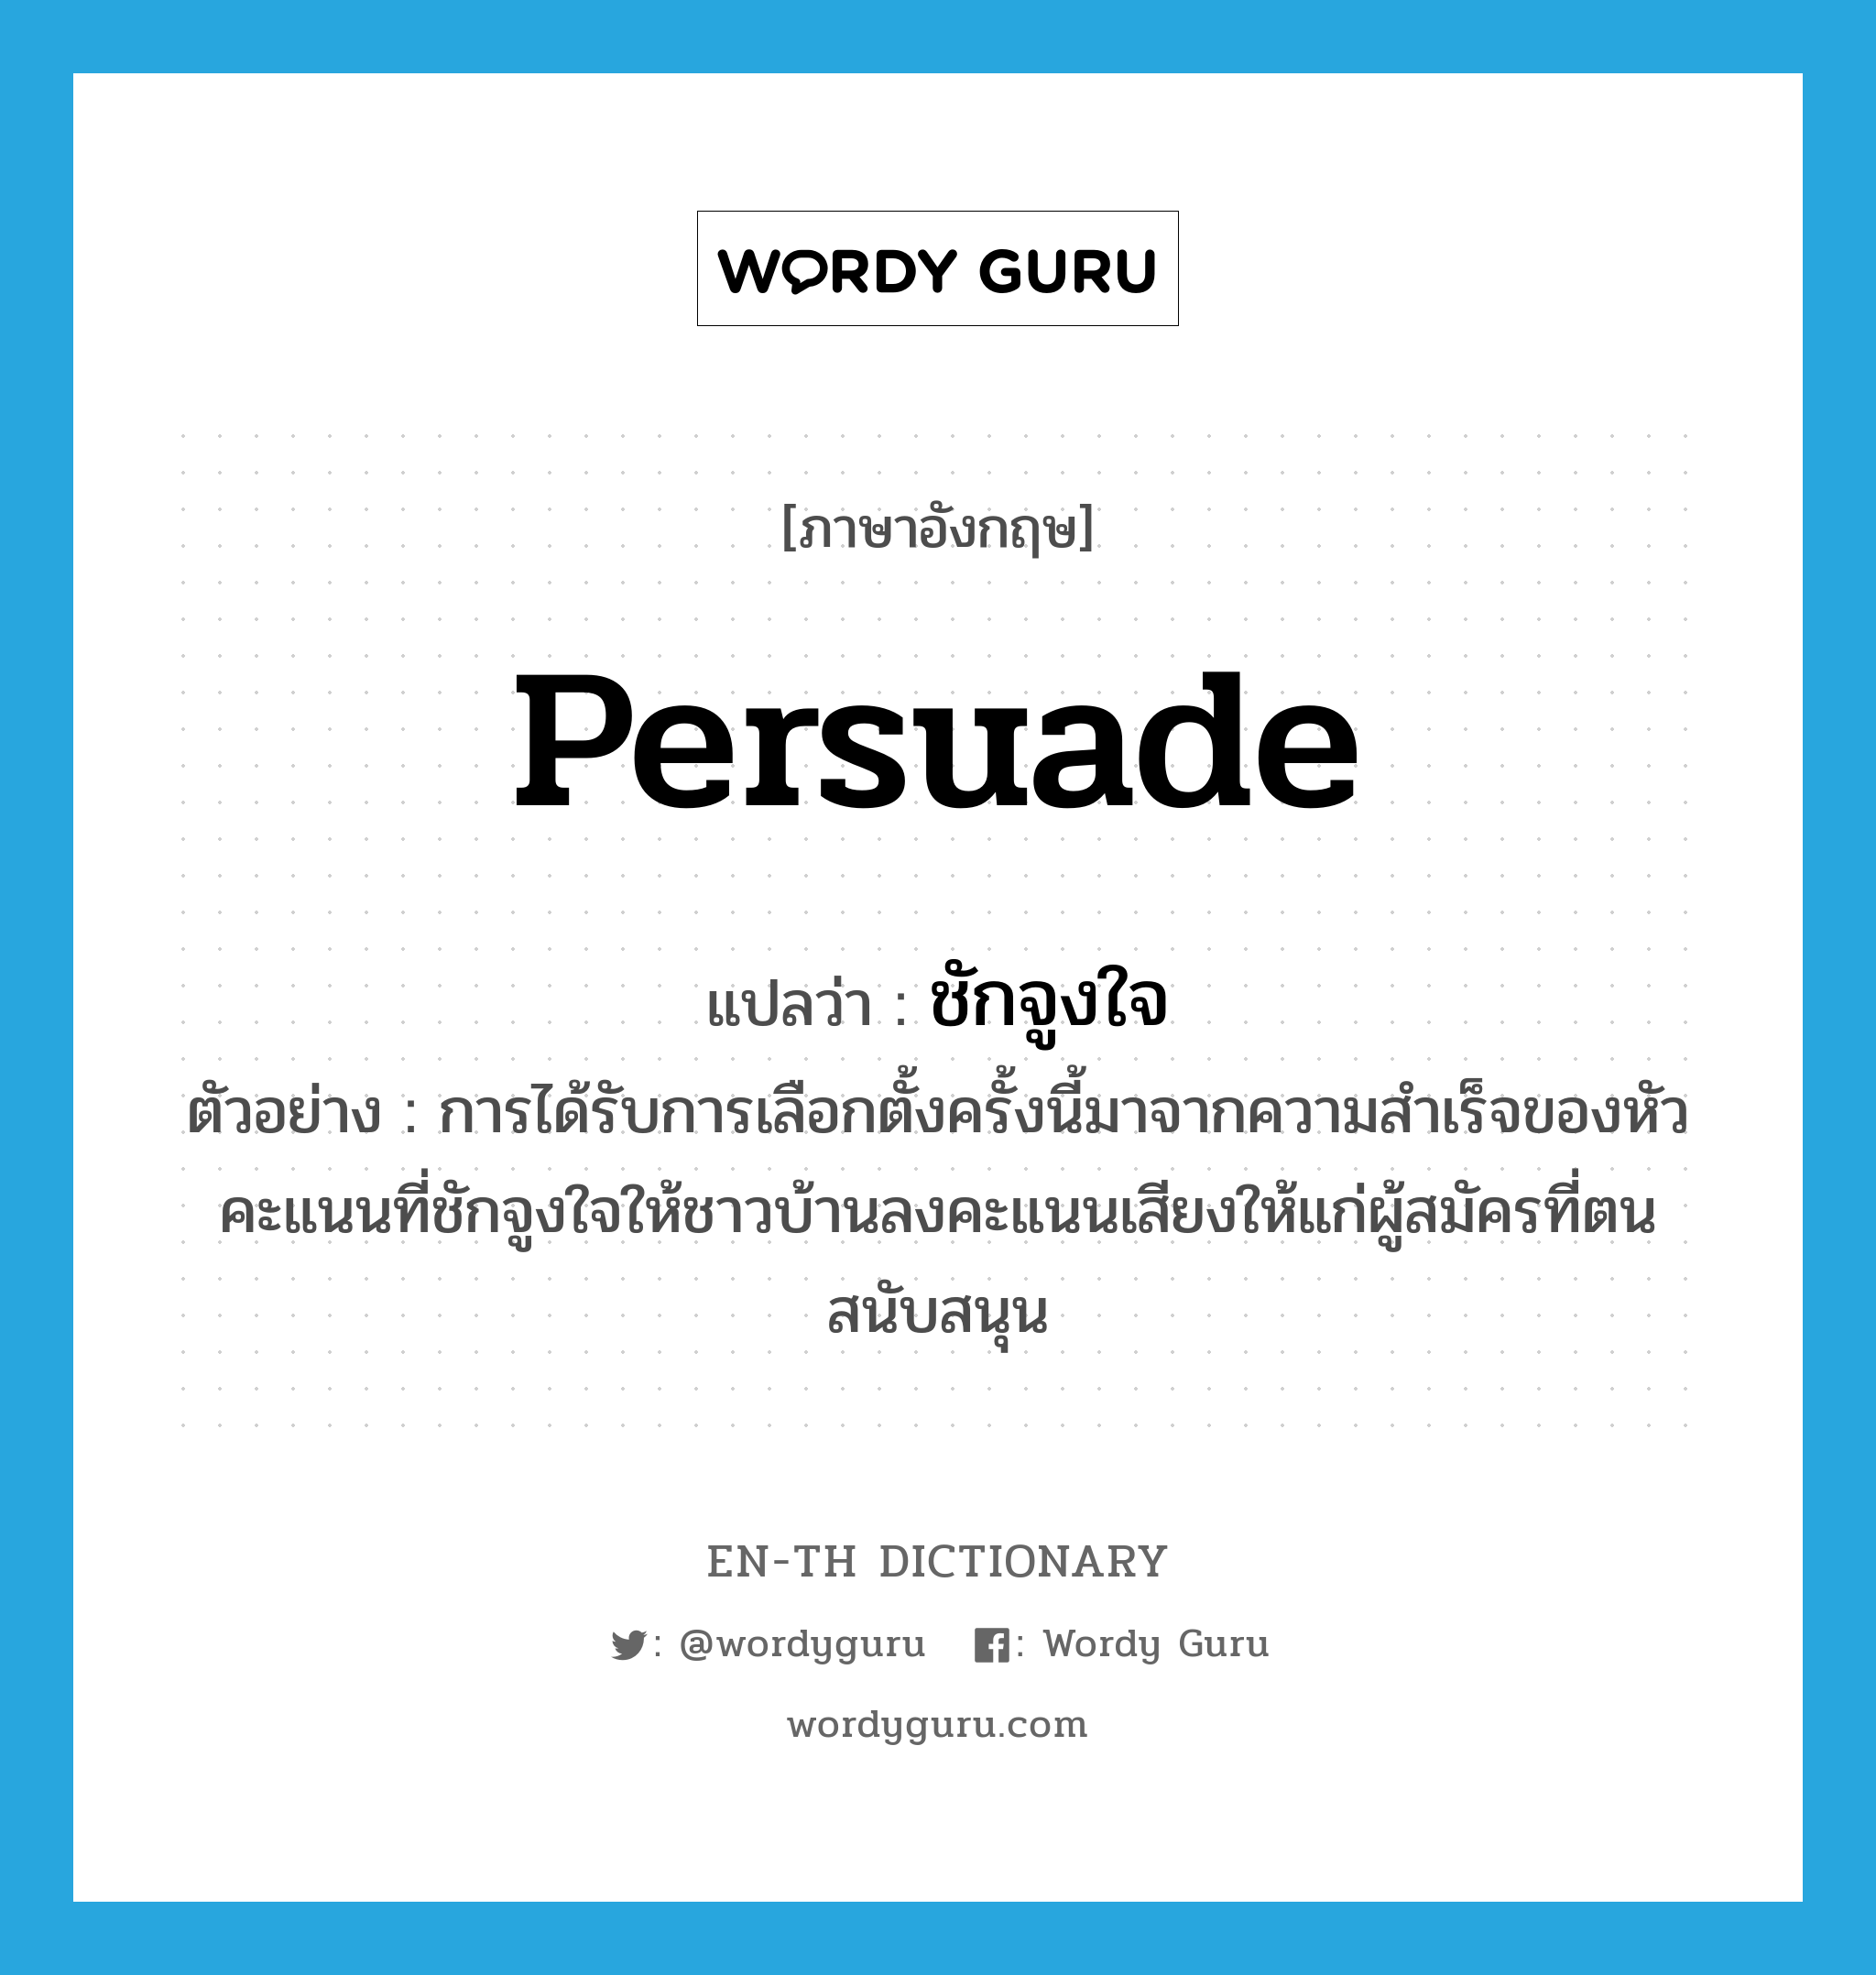 persuade แปลว่า?, คำศัพท์ภาษาอังกฤษ persuade แปลว่า ชักจูงใจ ประเภท V ตัวอย่าง การได้รับการเลือกตั้งครั้งนี้มาจากความสำเร็จของหัวคะแนนที่ชักจูงใจให้ชาวบ้านลงคะแนนเสียงให้แก่ผู้สมัครที่ตนสนับสนุน หมวด V